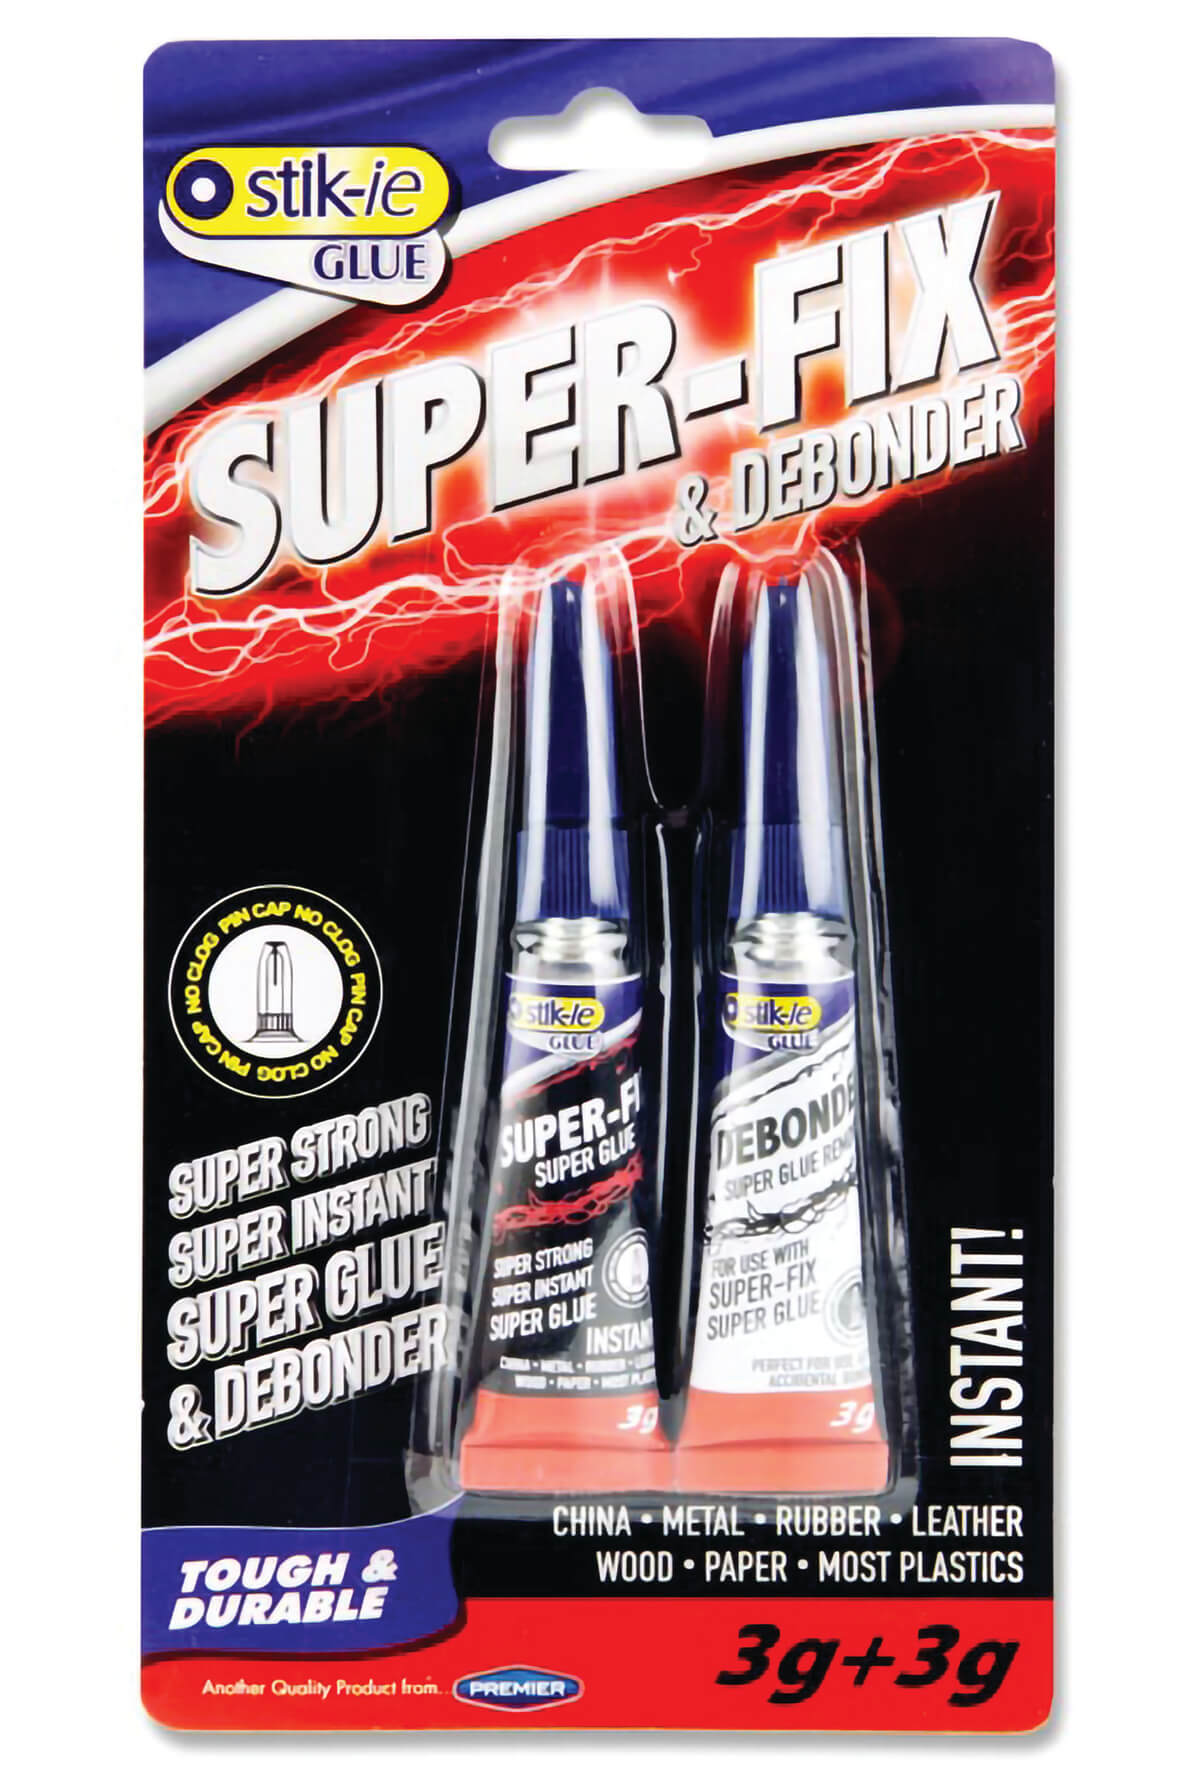 Super Glue 3g and De-bonder 3g